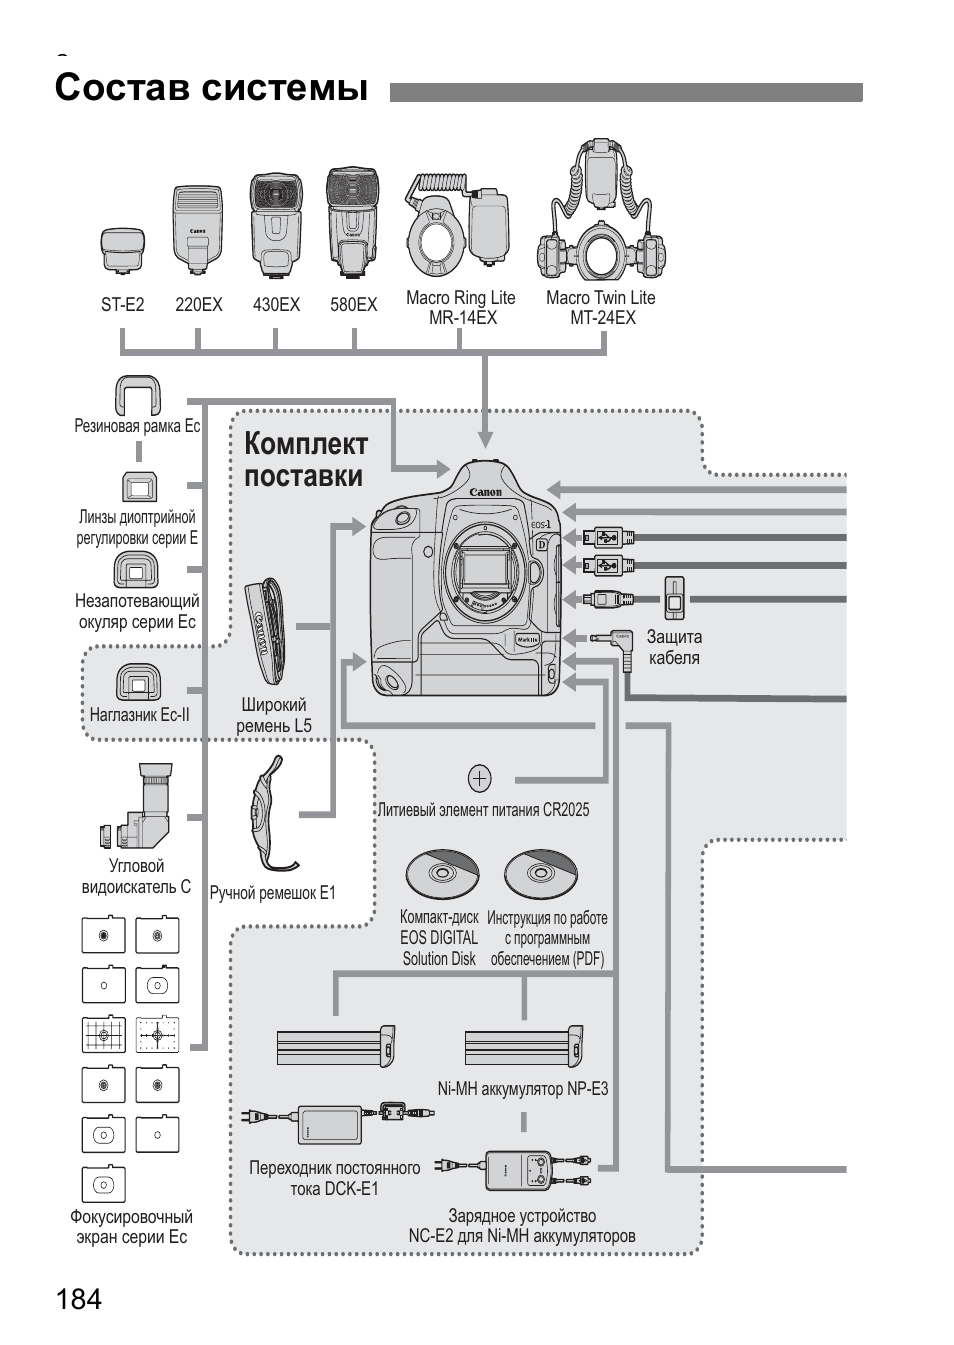 Состав системы, Комплект поставки | Инструкция по эксплуатации Canon EOS 1D Mark II N | Страница 184 / 196